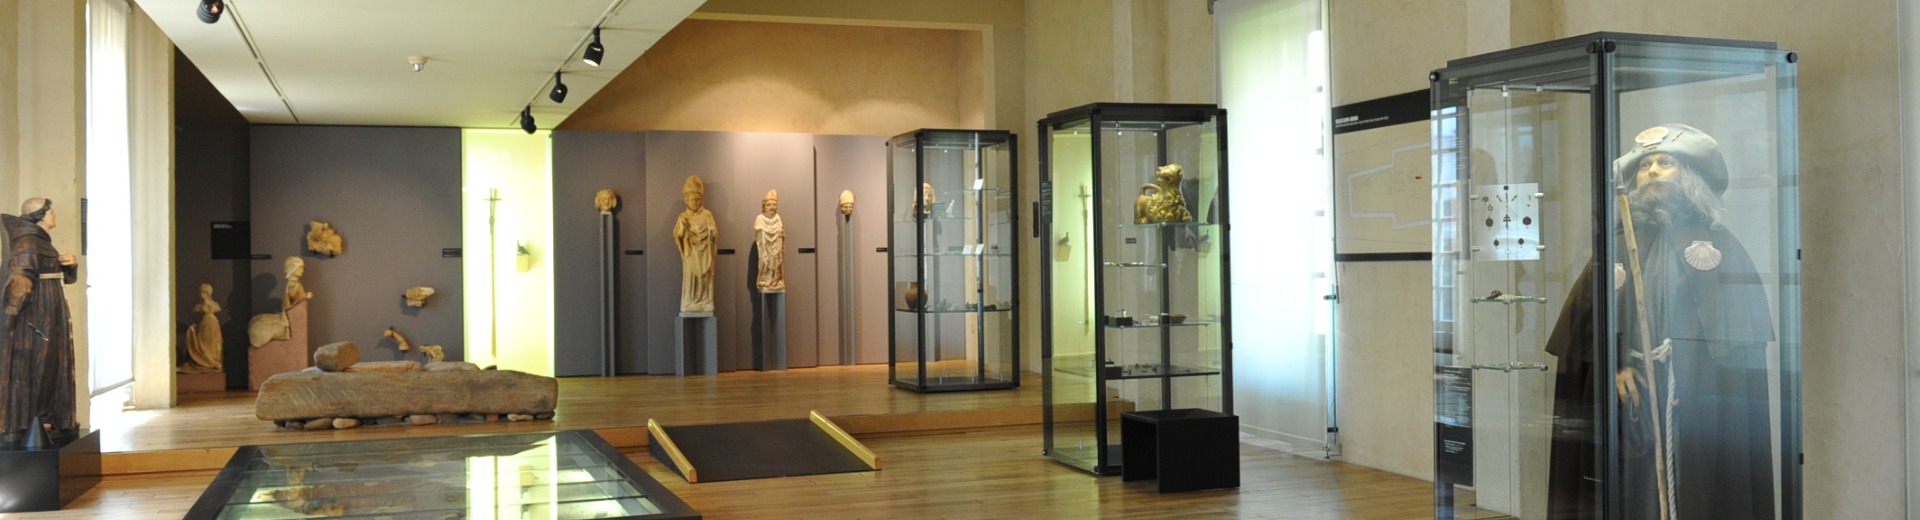 Salle du musée Labenche de Brive